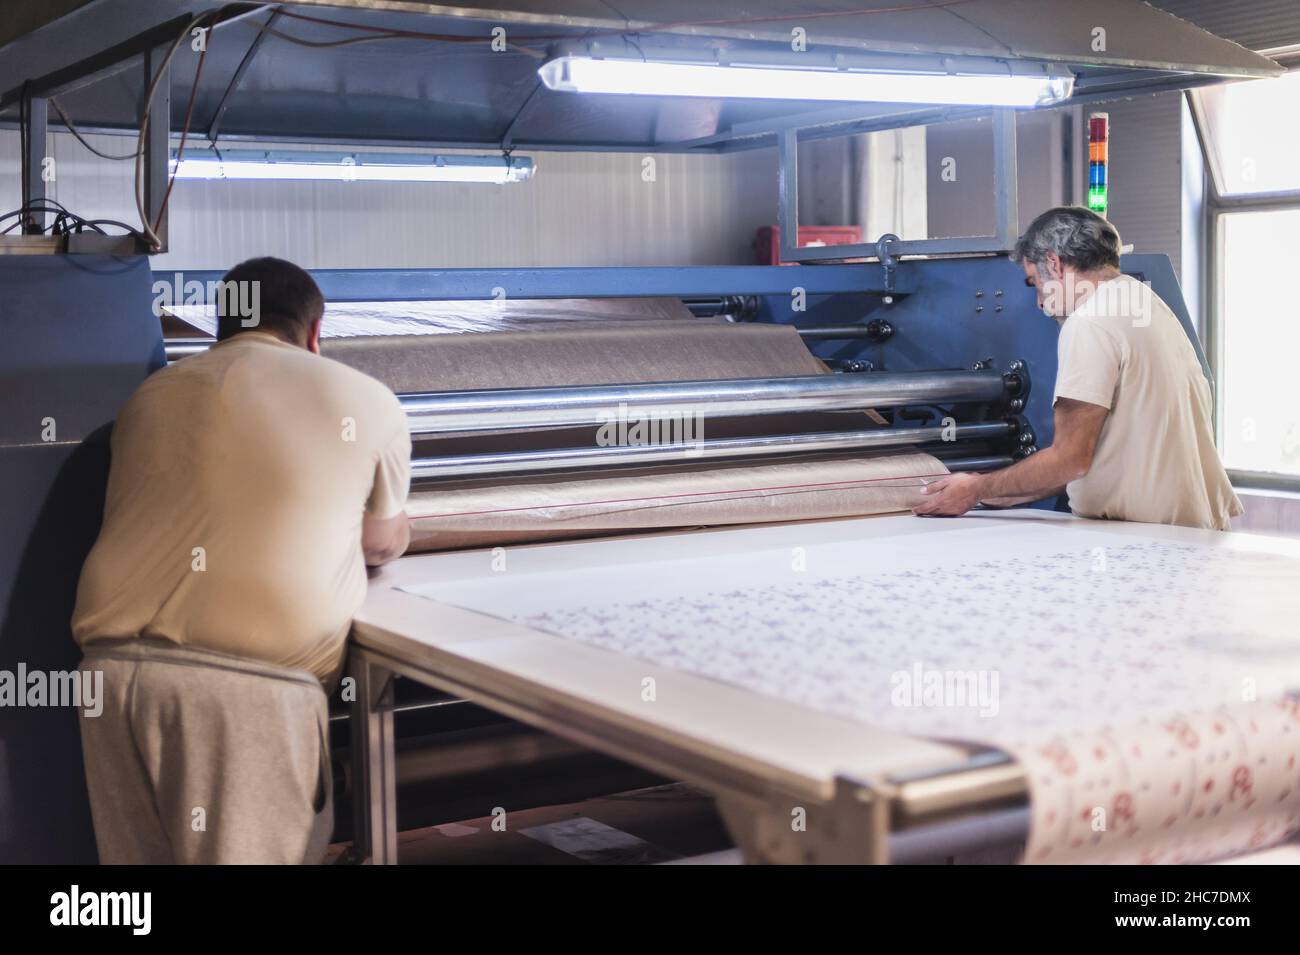 Dos técnicos trabajadores operador trabaja en tela de primera calidad industrial de sublimación rodillo de impresión por calor en la imprenta digital o Foto de stock